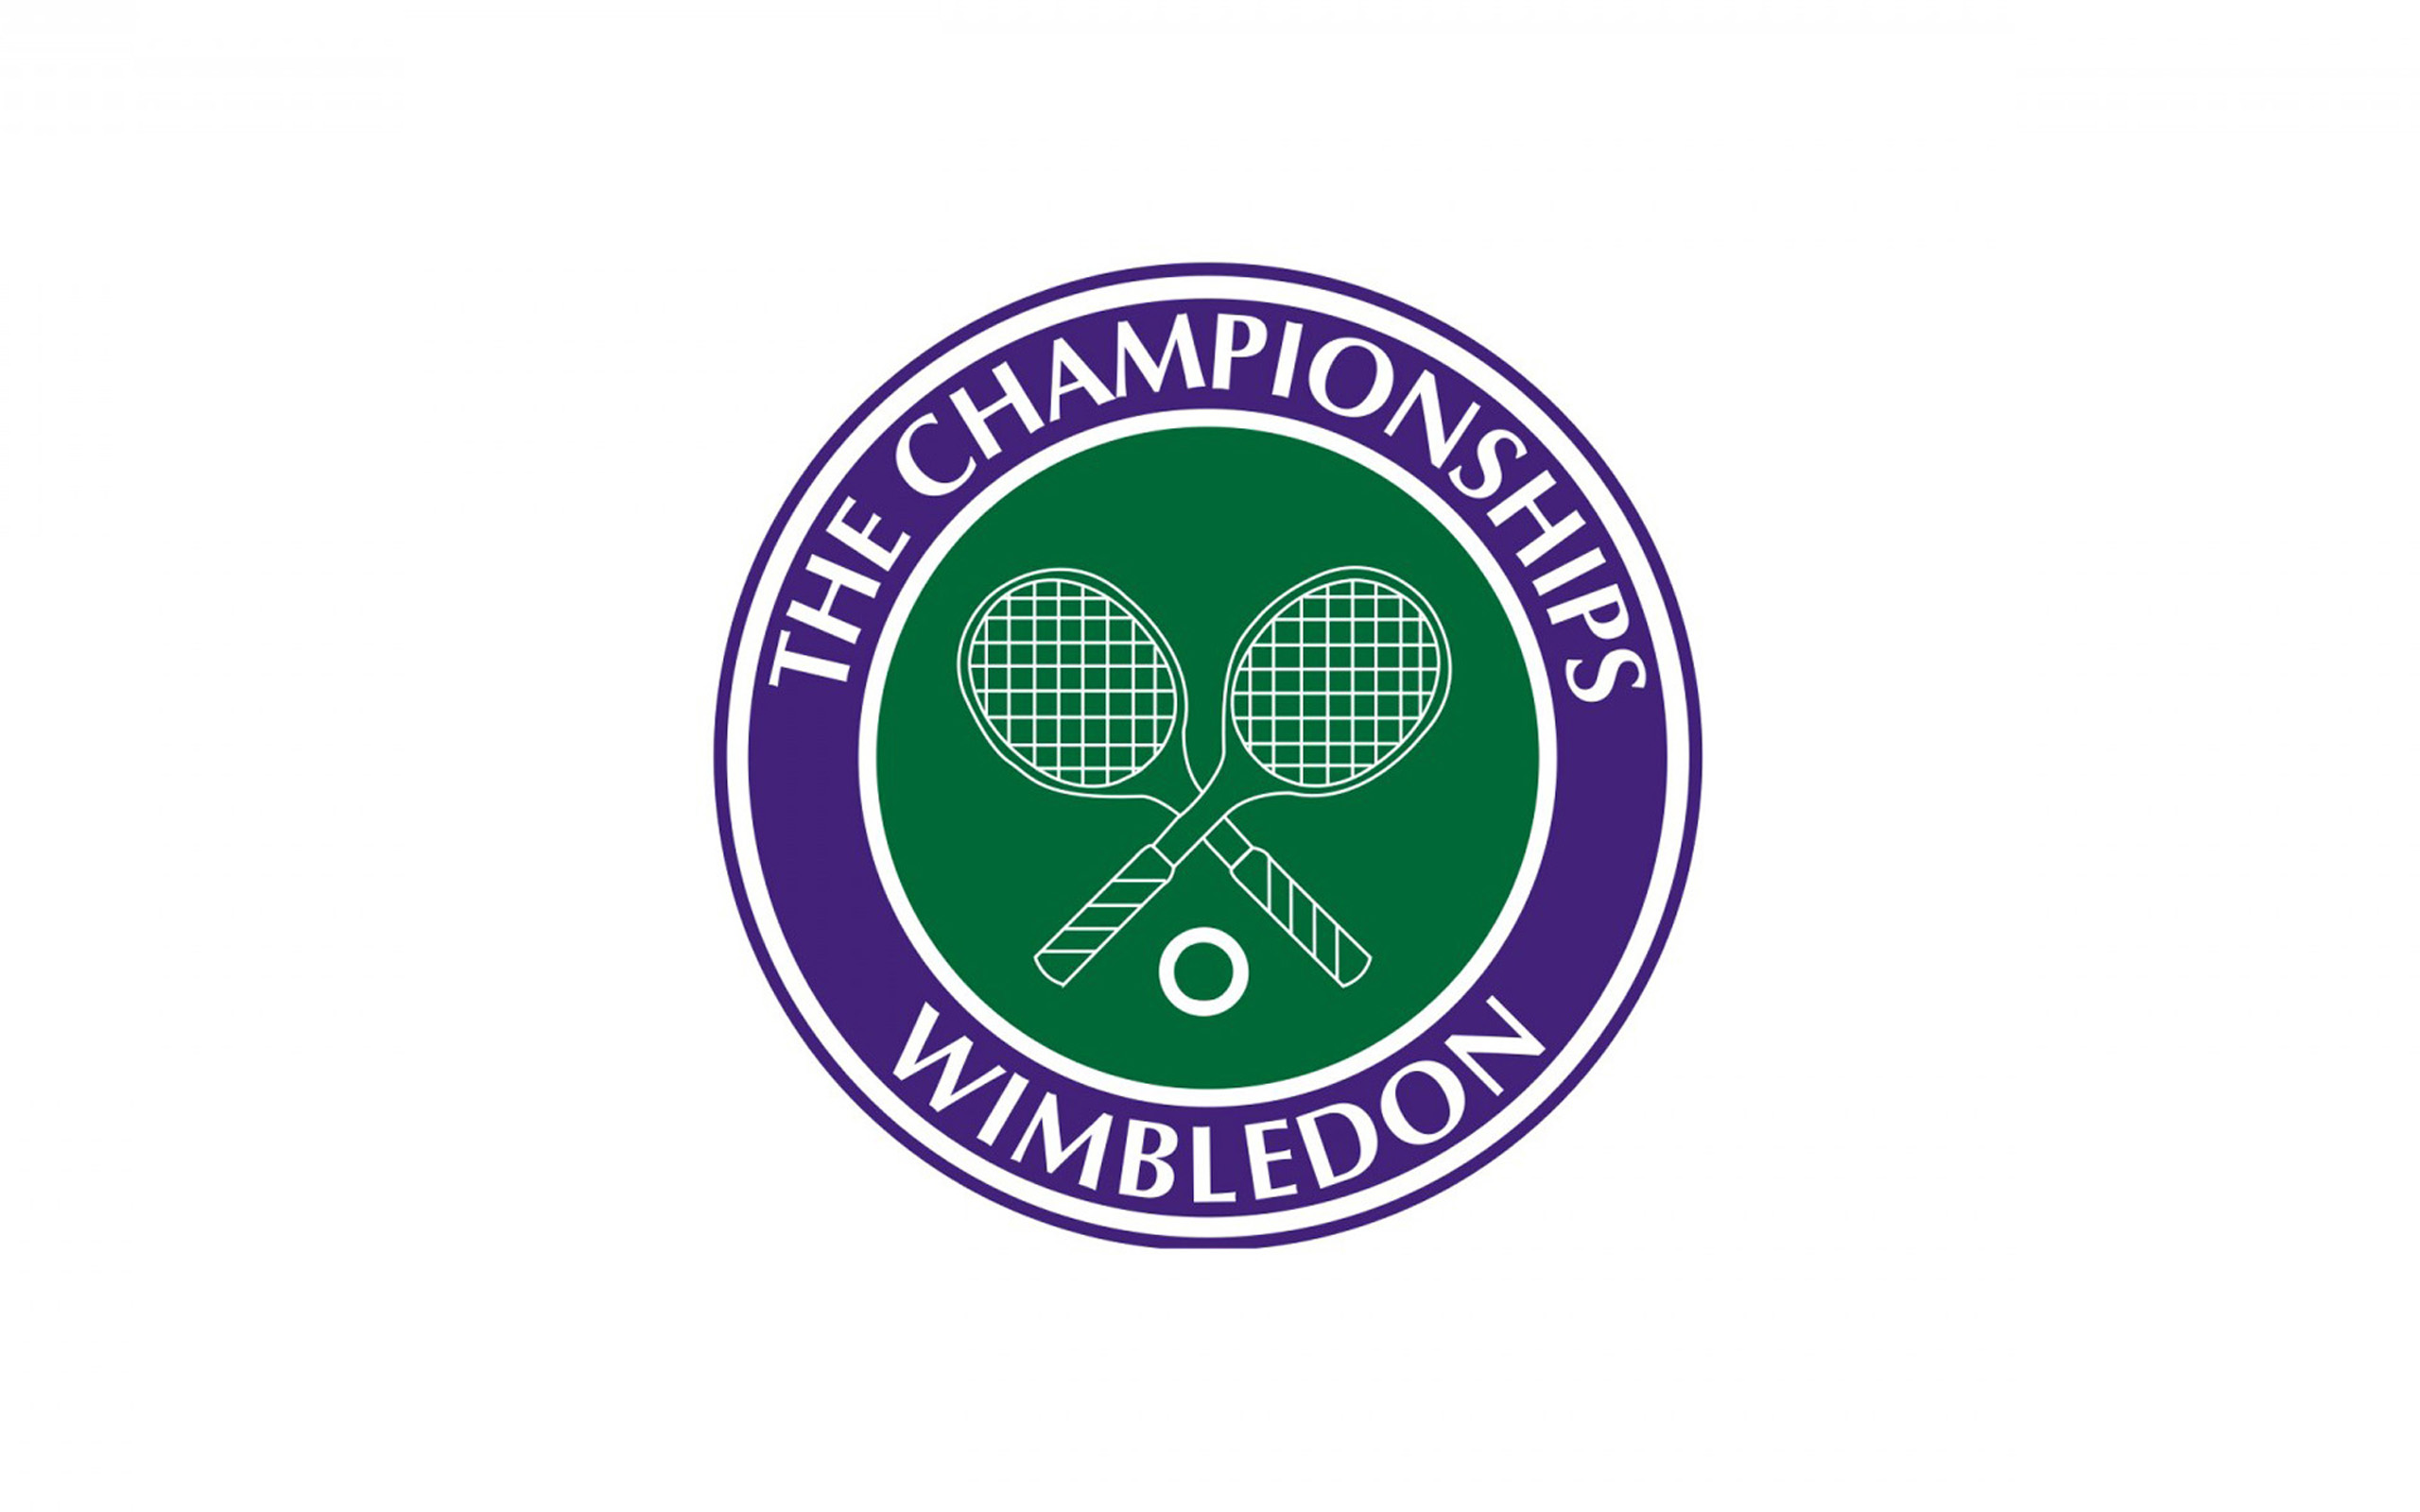 Wimbledon Logos